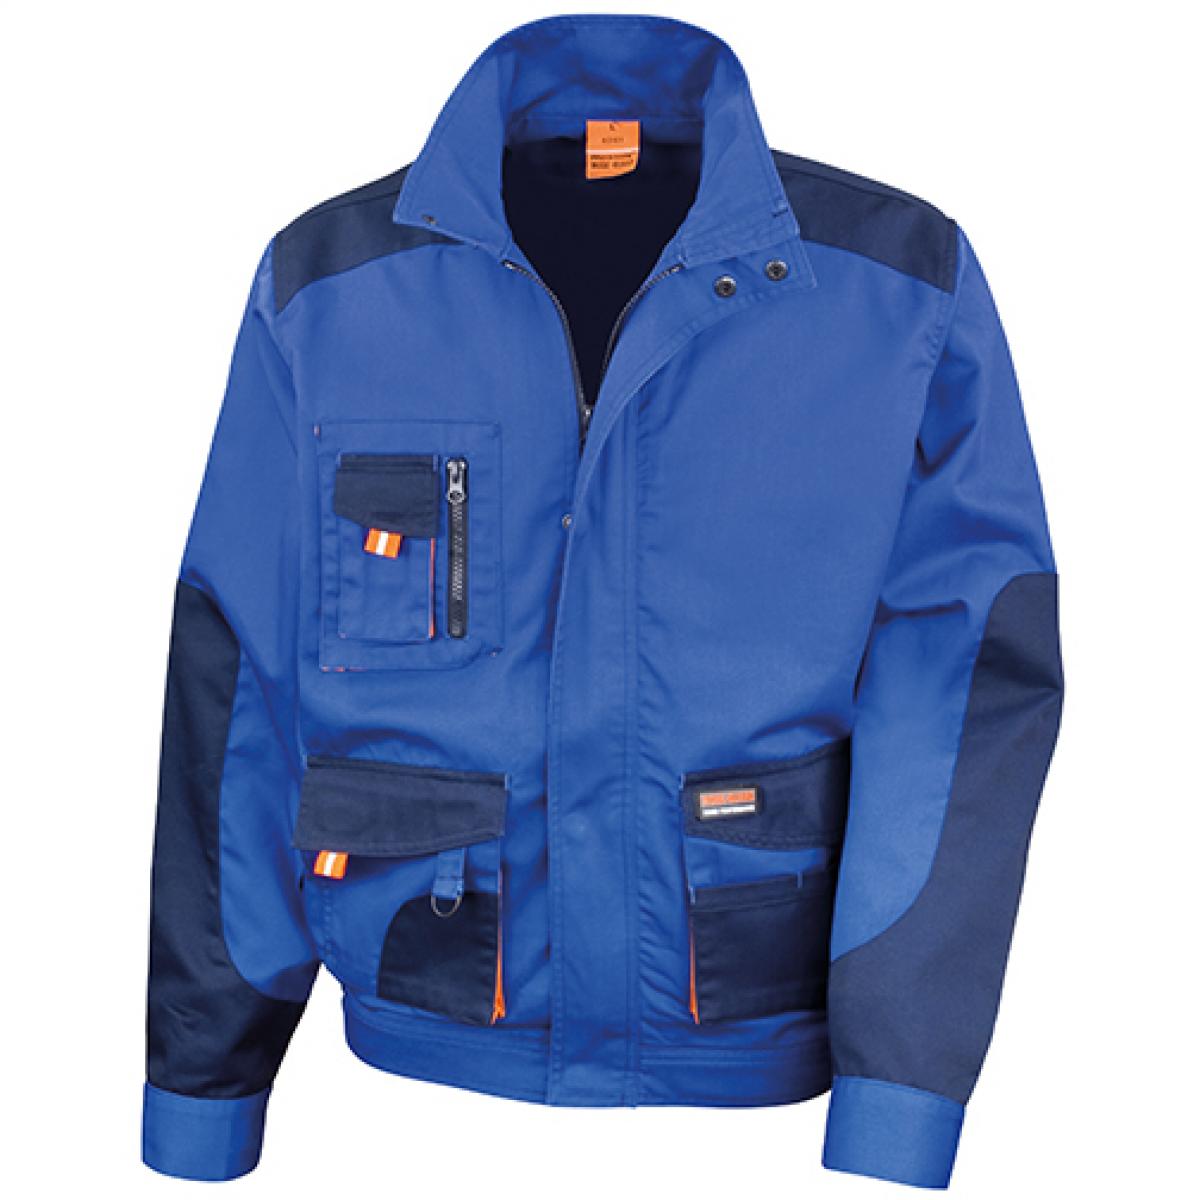 Hersteller: Result WORK-GUARD Herstellernummer: R316X Artikelbezeichnung: Herren Work-Guard Arbeits Jacke Farbe: Royal/Navy/Orange